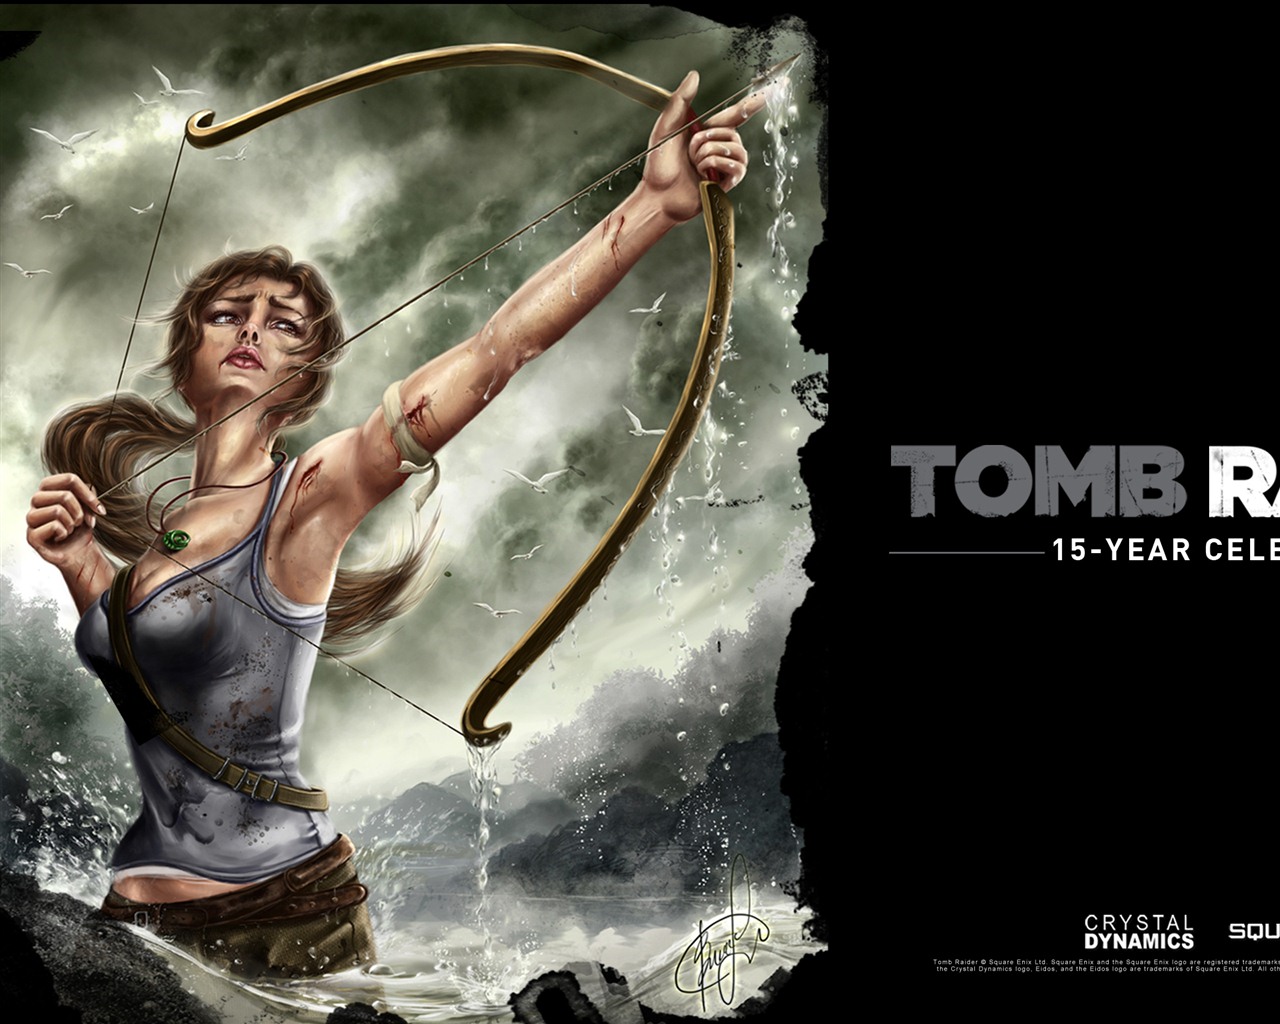 Tomb Raider 15-Year Celebration 古墓丽影15周年纪念版 高清壁纸5 - 1280x1024